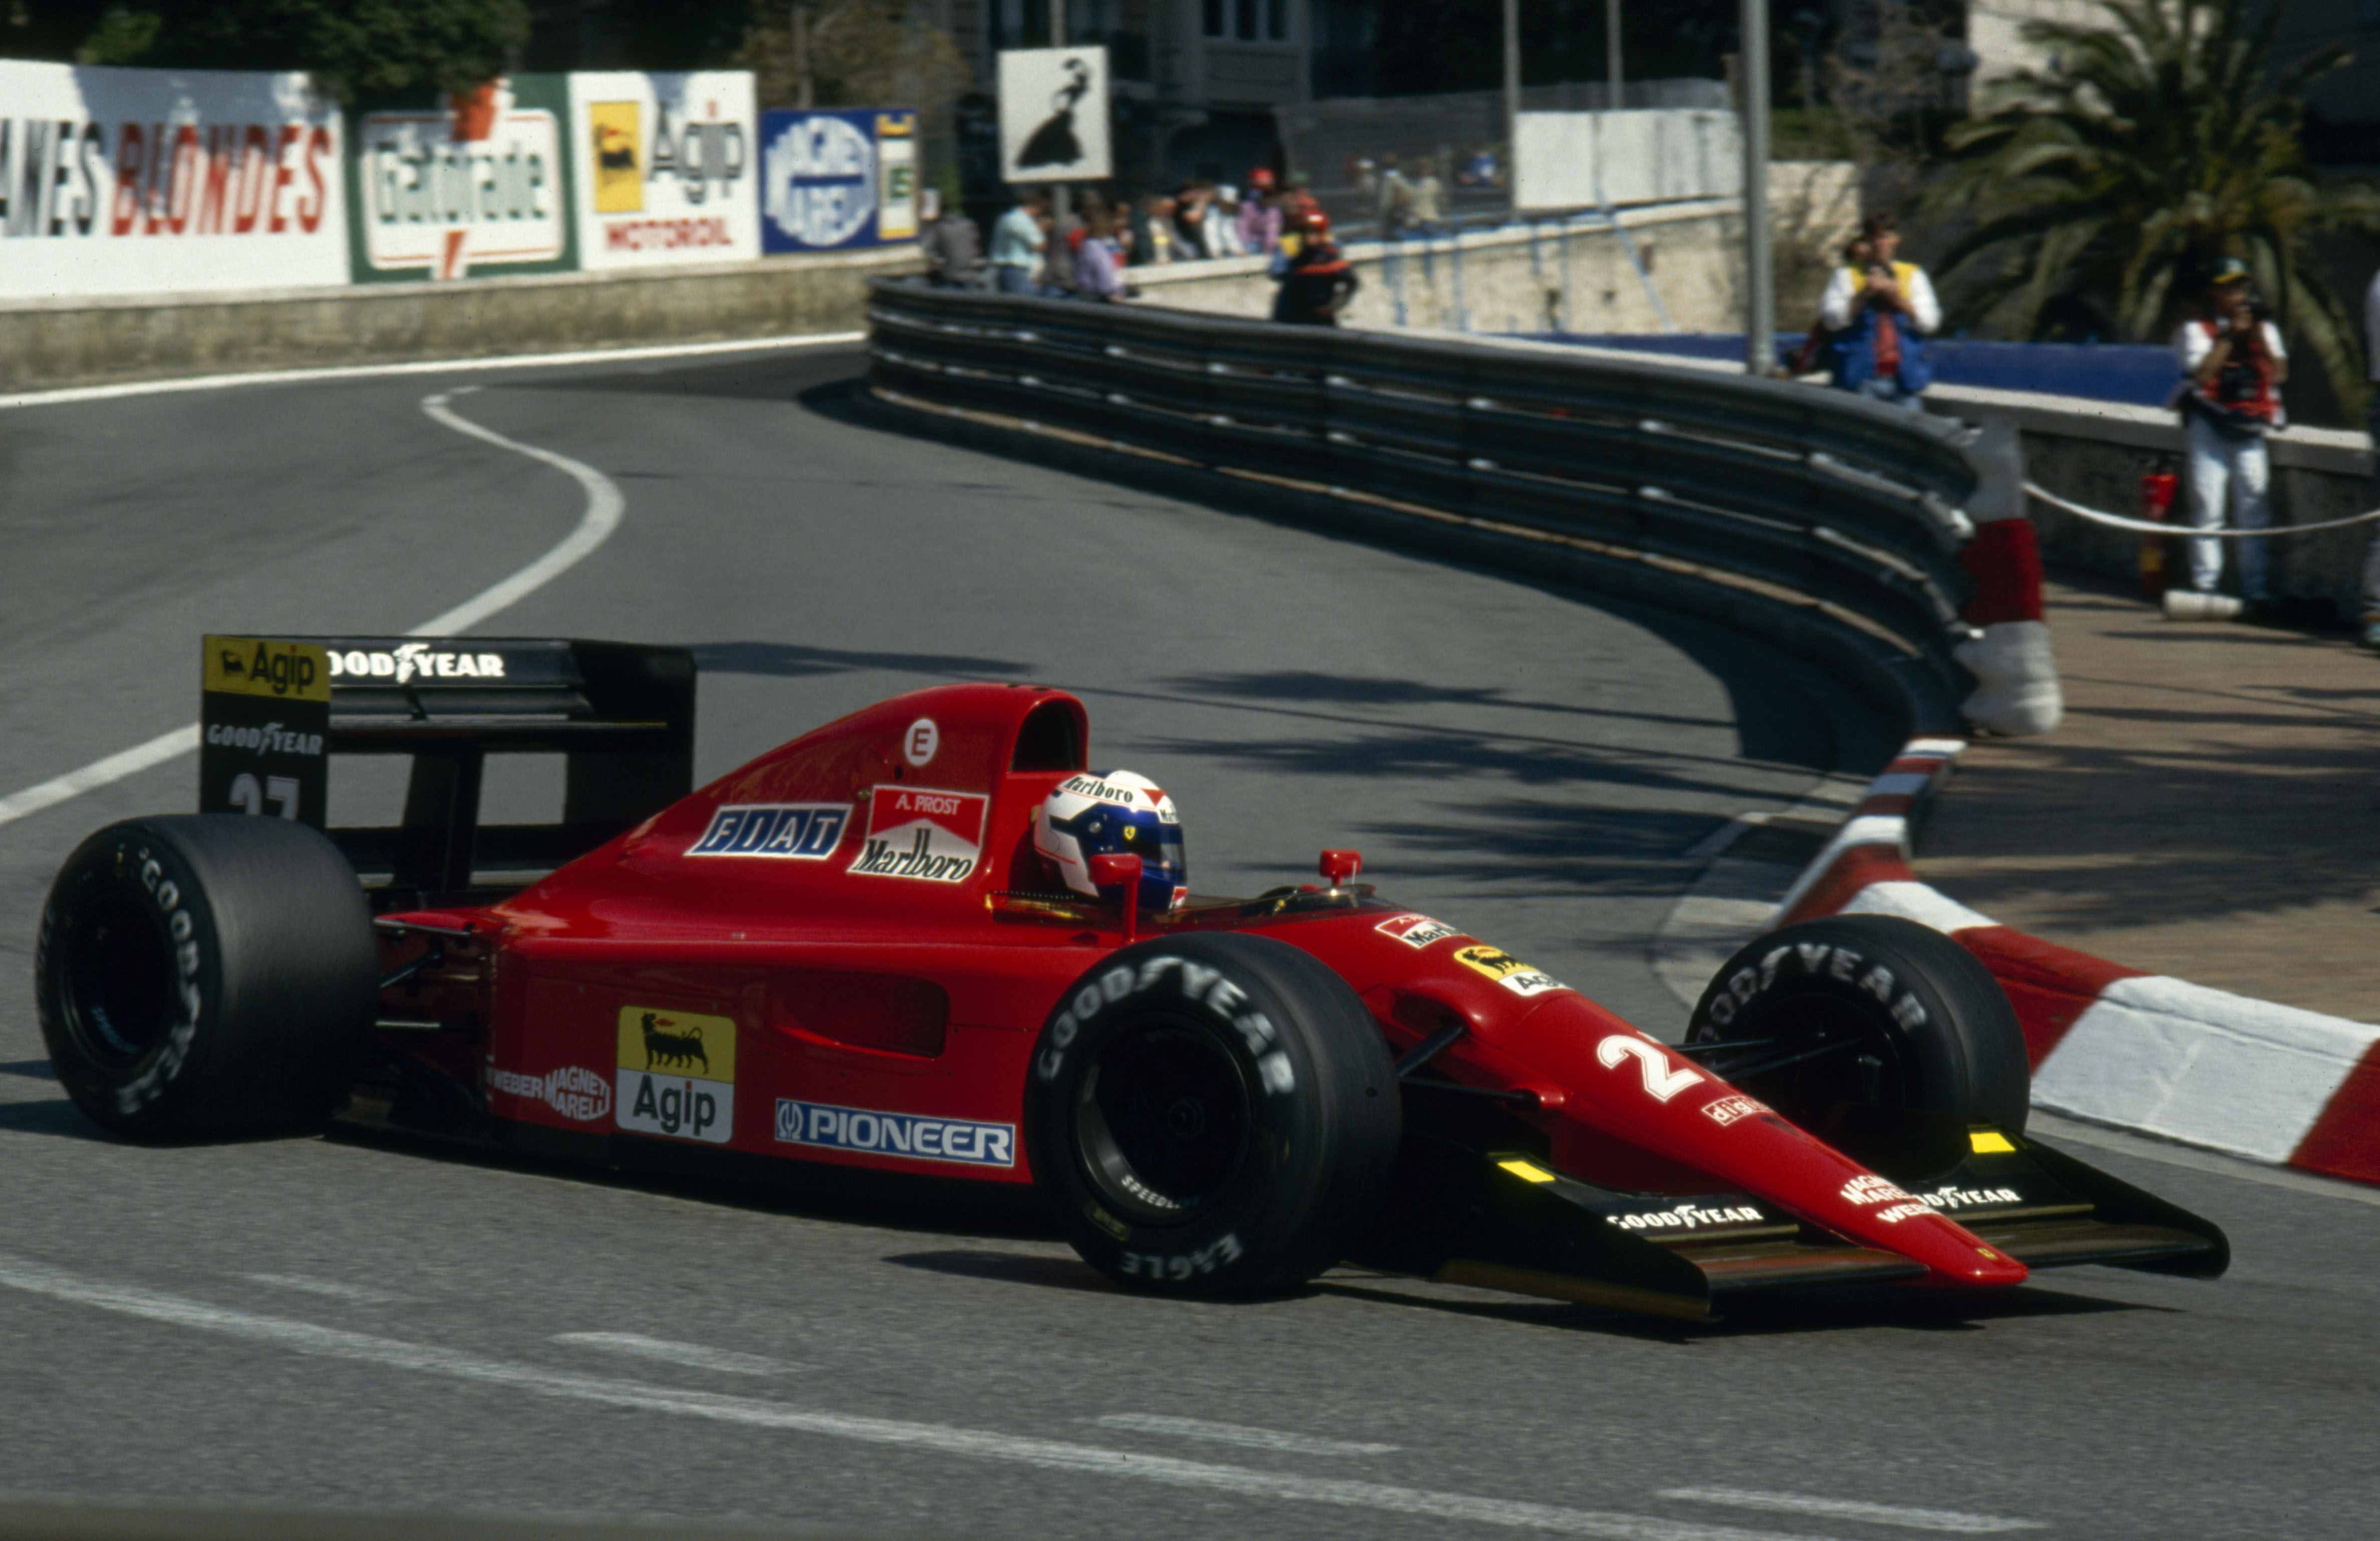 Alain Prost Scuderia Ferrari Ferrari Monaco Grand